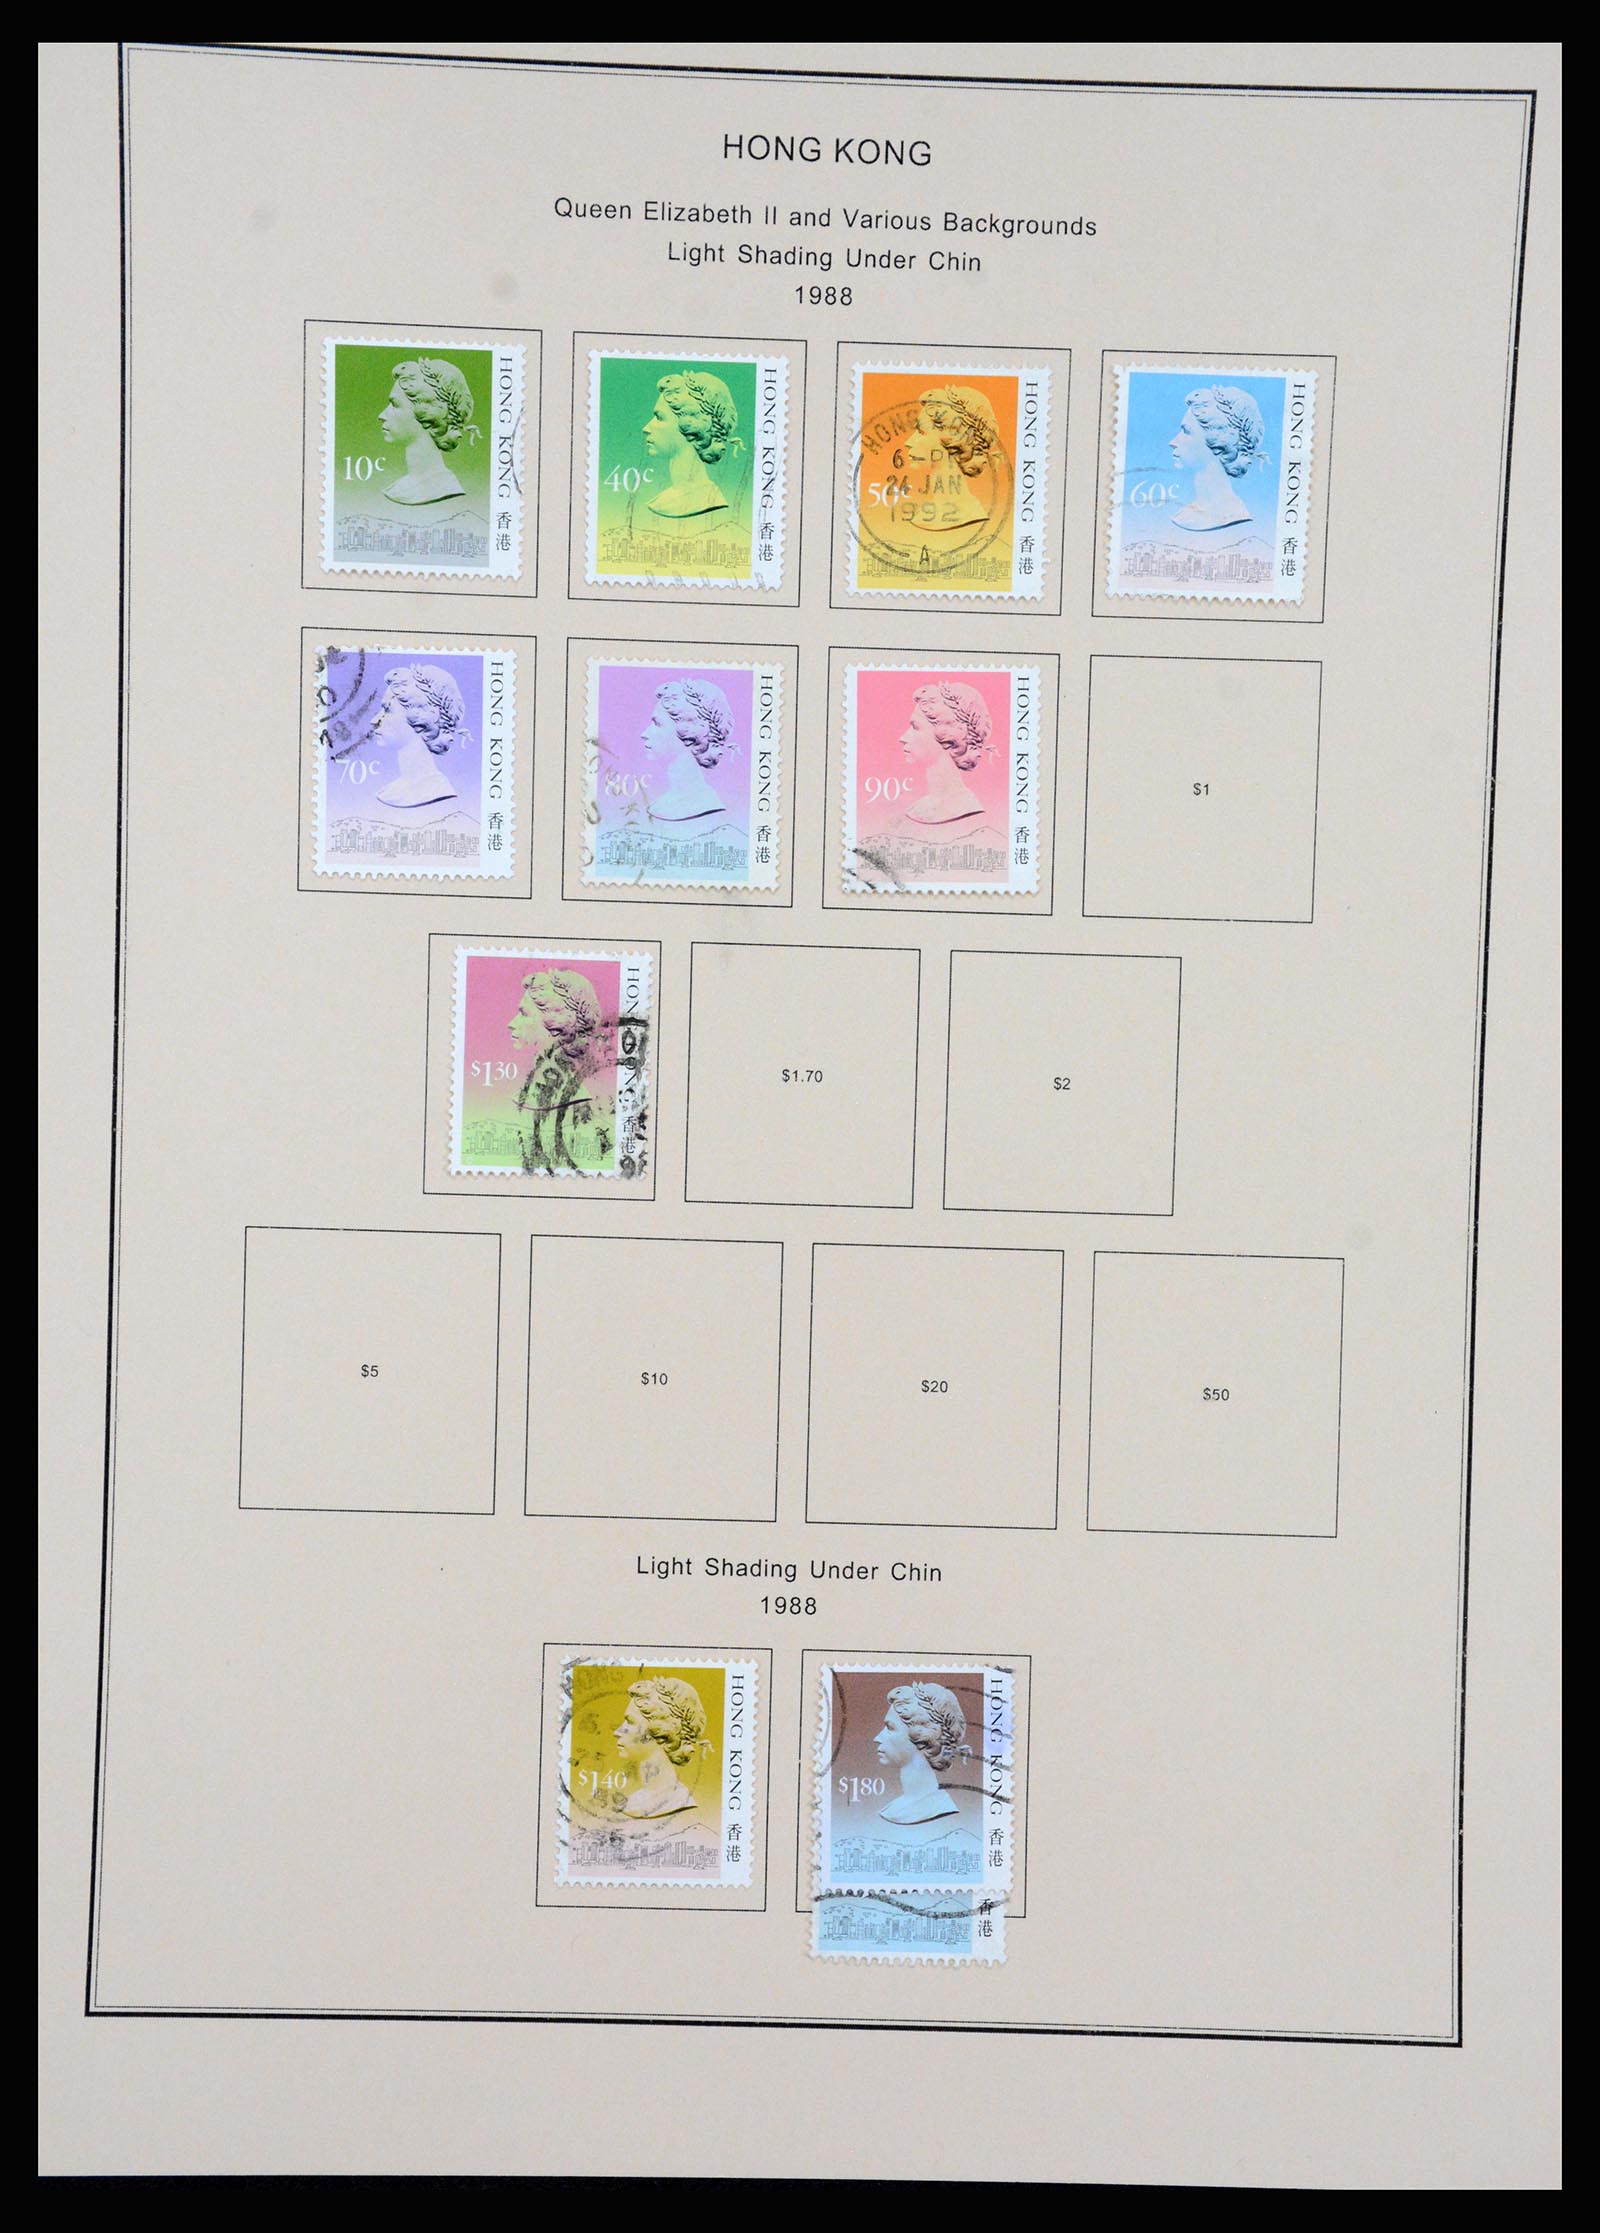 37210 061 - Stamp collection 37210 Hong Kong 1862-2000.